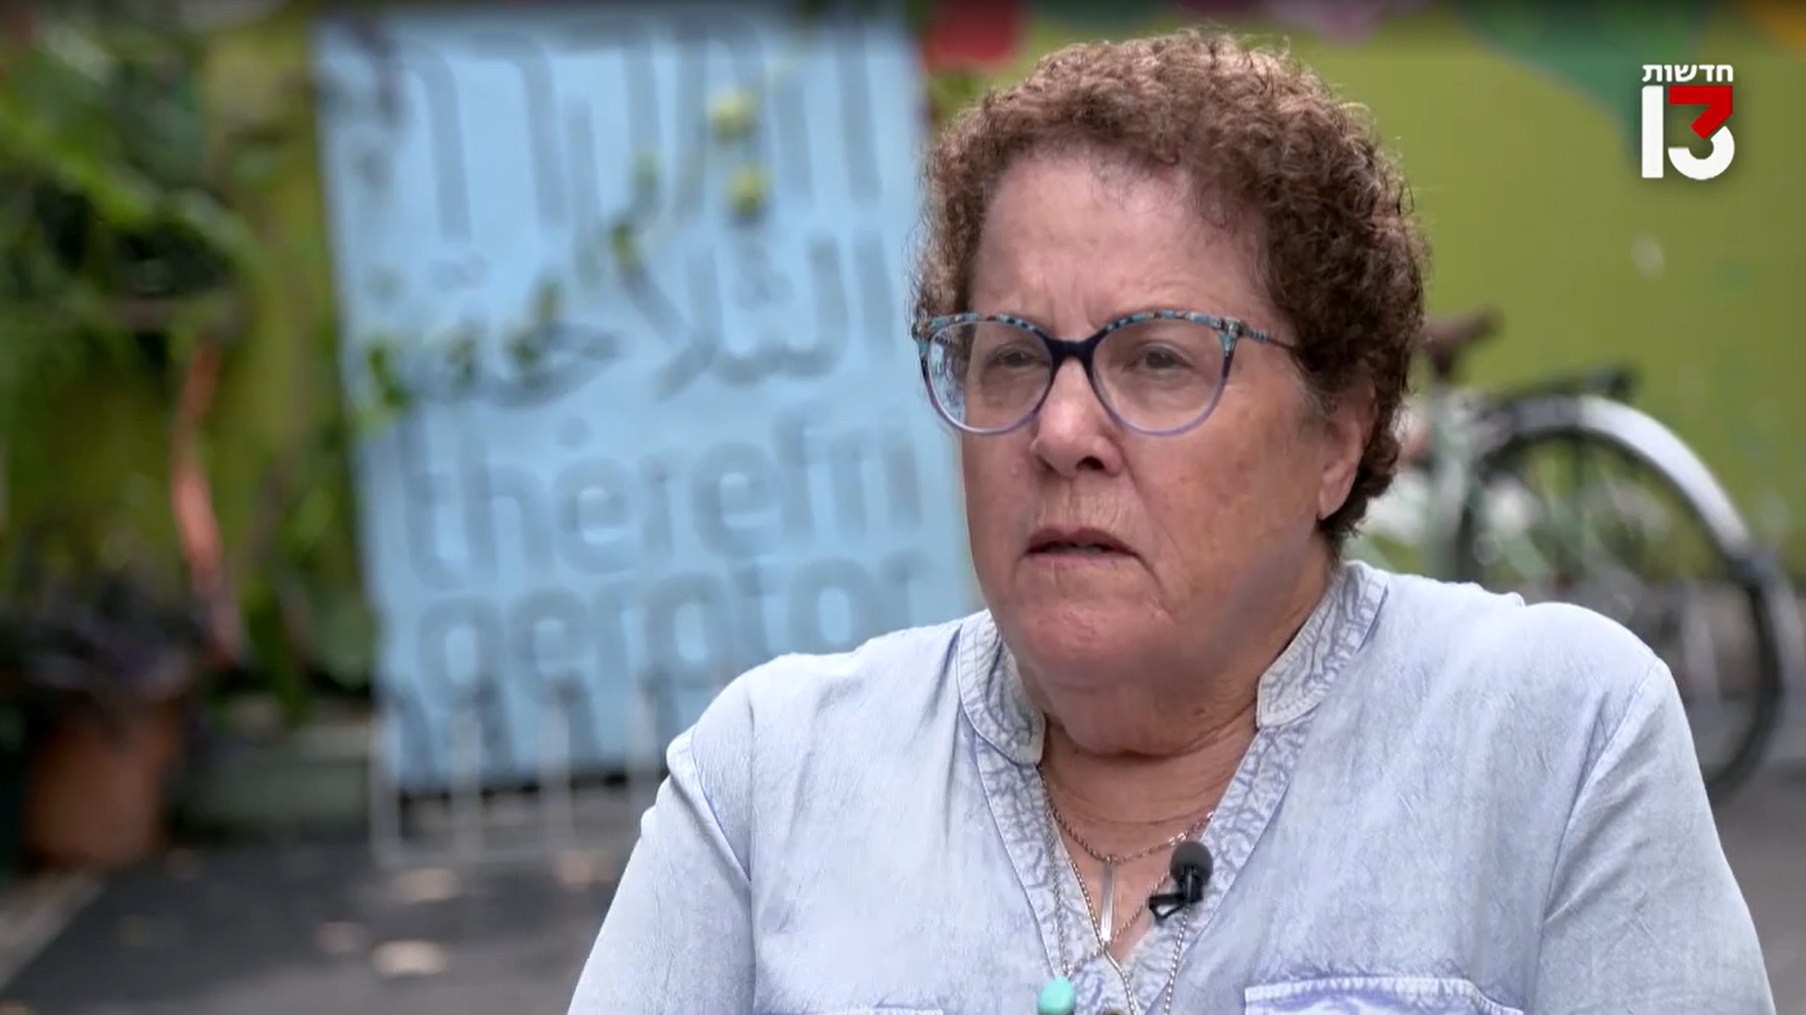 Batia Holin schilderte im israelischen Fernsehen ihre traumatisierenden Erlebnisse. (Bild: Screenshot/Reshet 13)